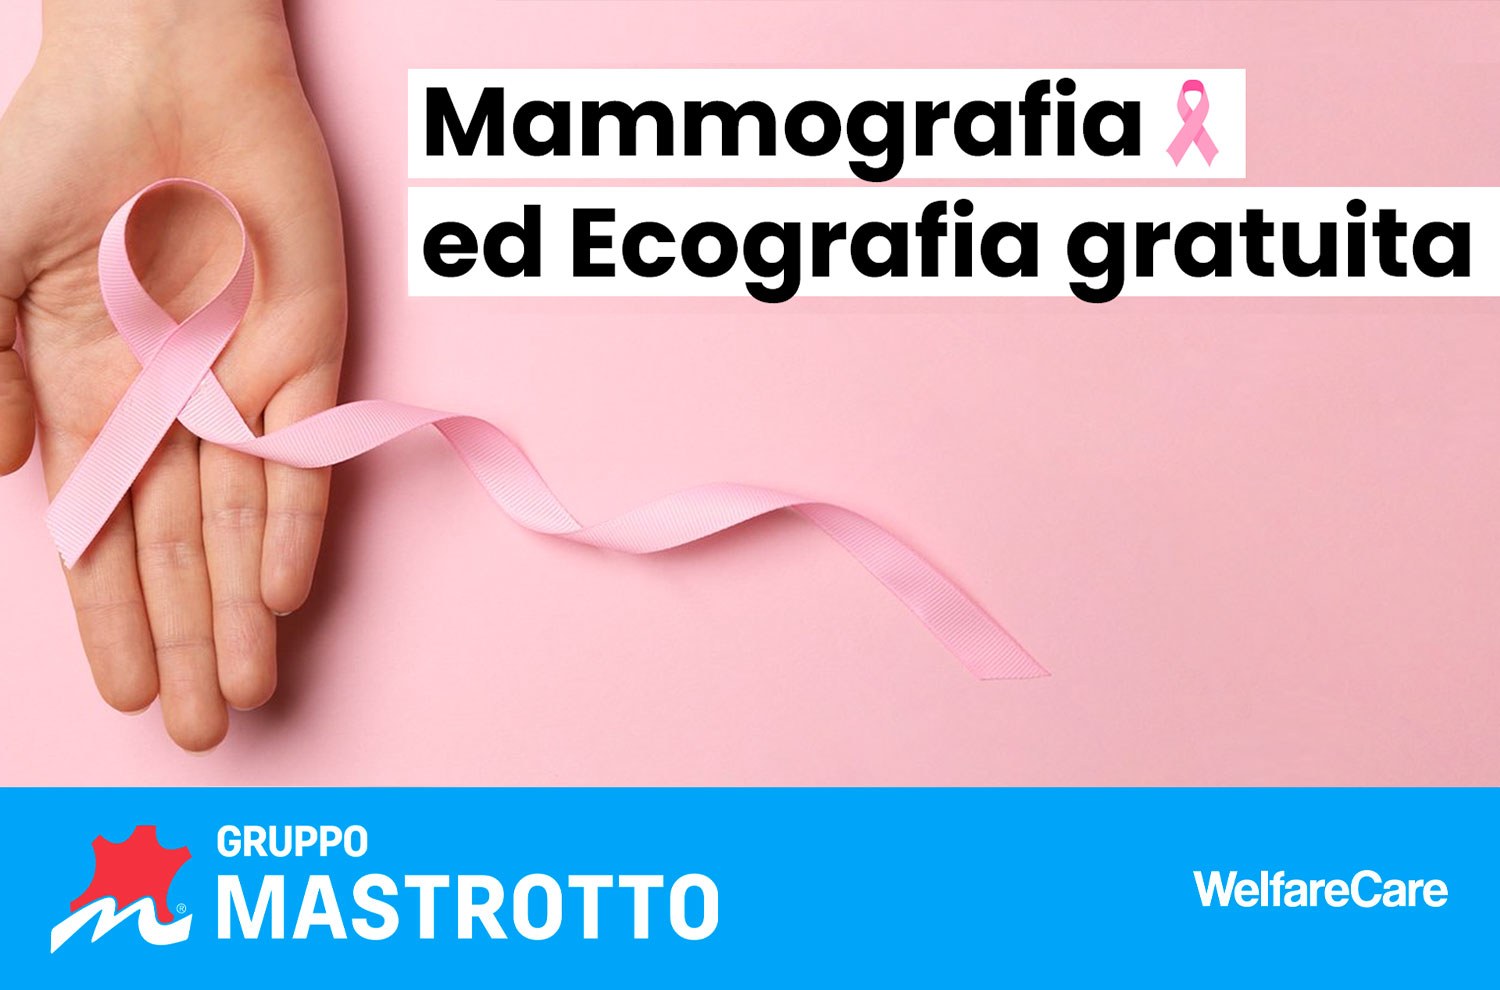 Copertina mammografia ed ecografia gratuita 2/2- Gruppo Mastrotto